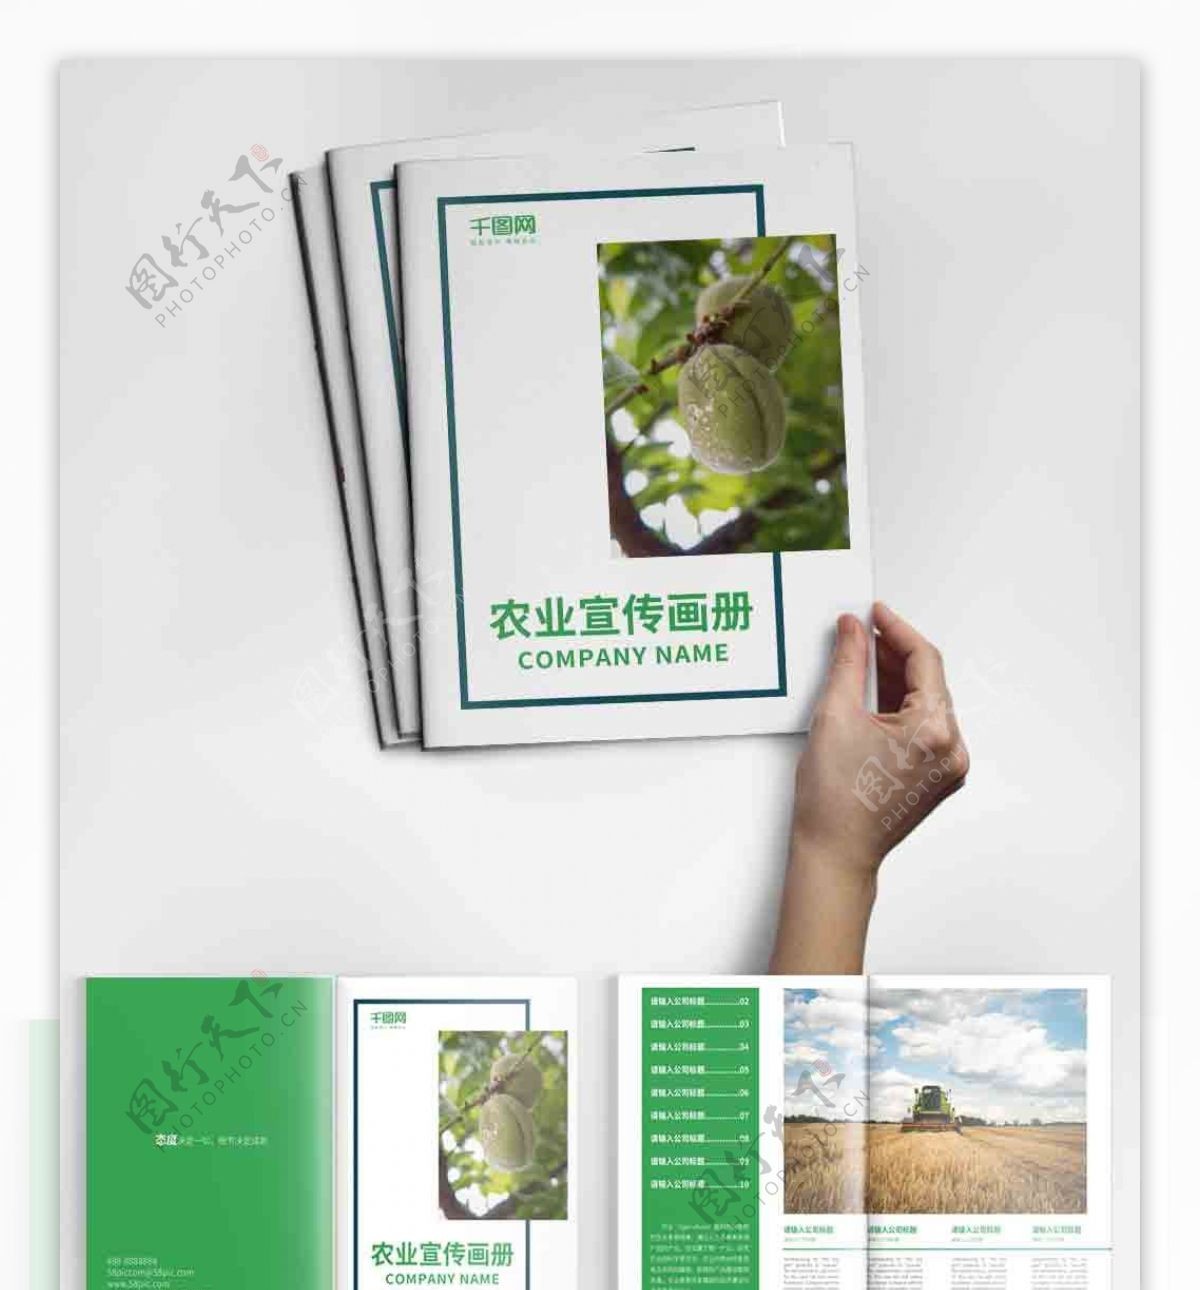 绿色大气农业宣传画册设计PSD模板